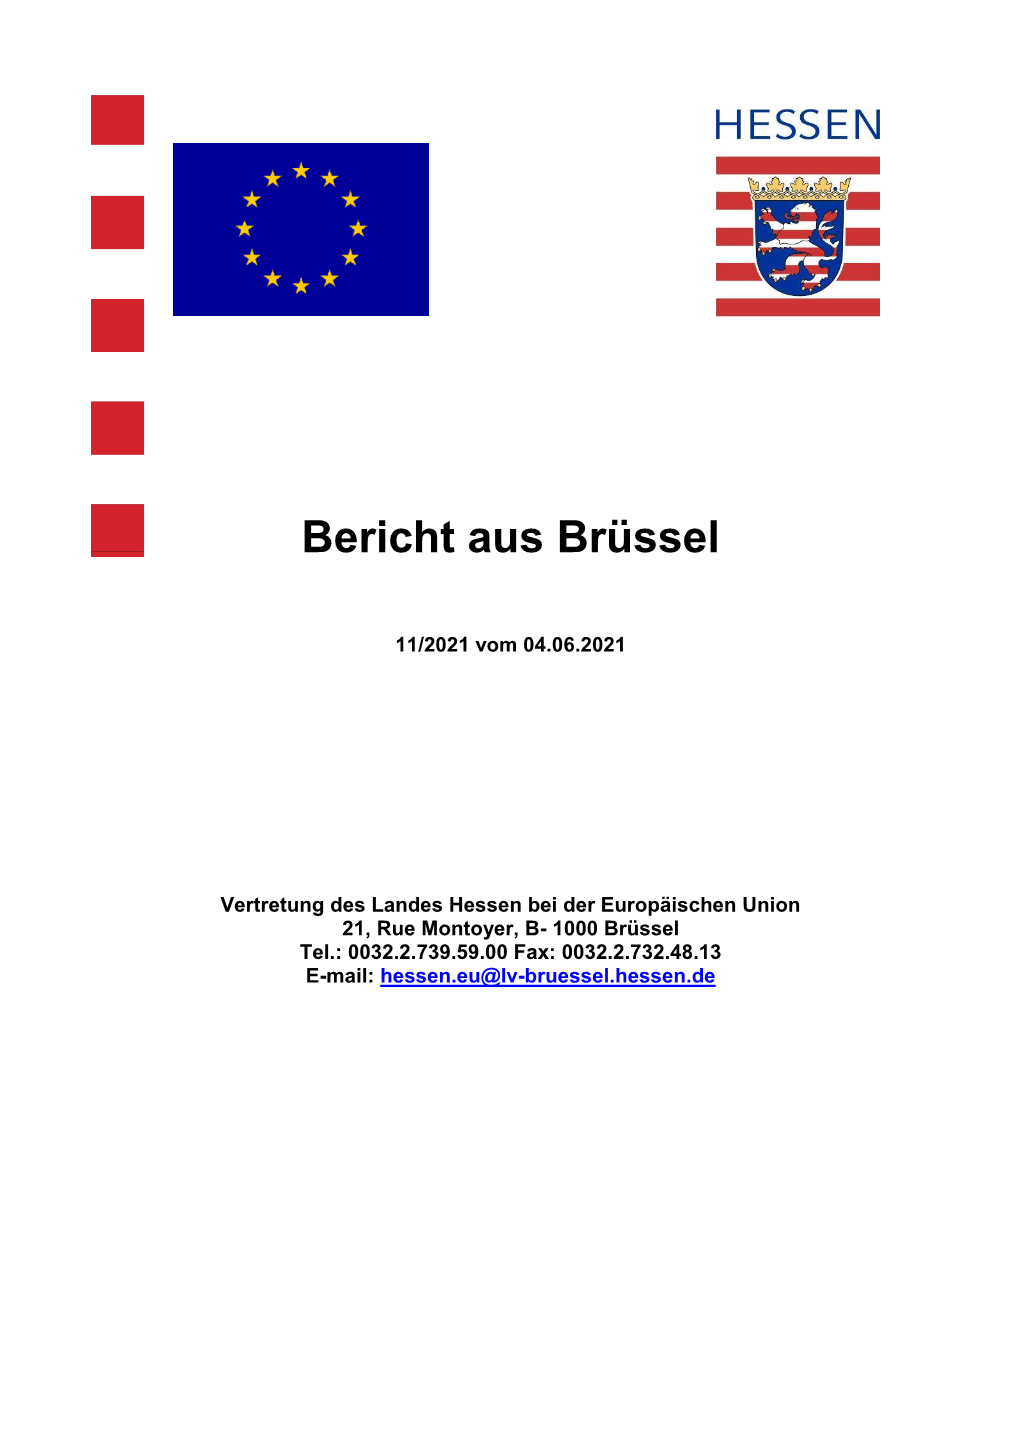 Bericht Aus Brüssel 11 Vom 04.06.2021